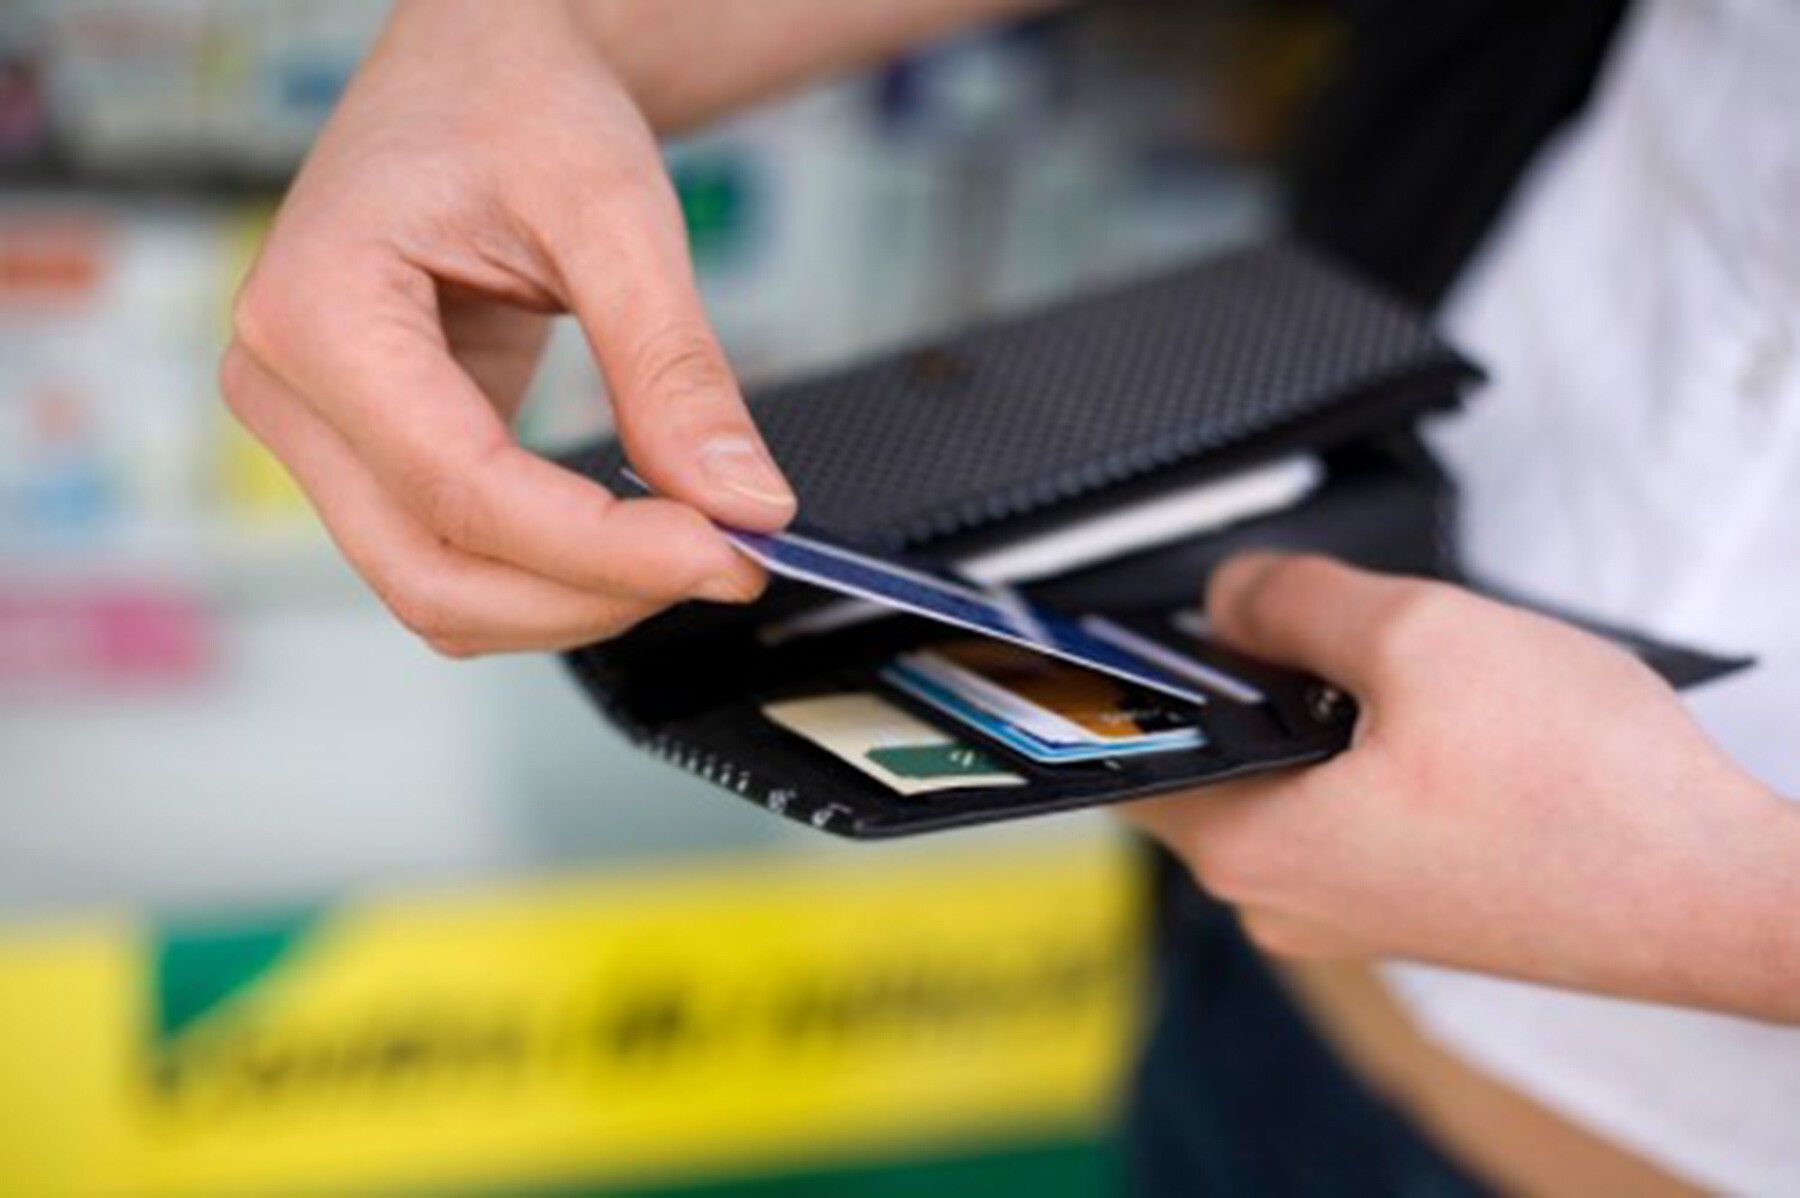 Sancionada lei que permite cobrar mais caro de quem paga com cartão